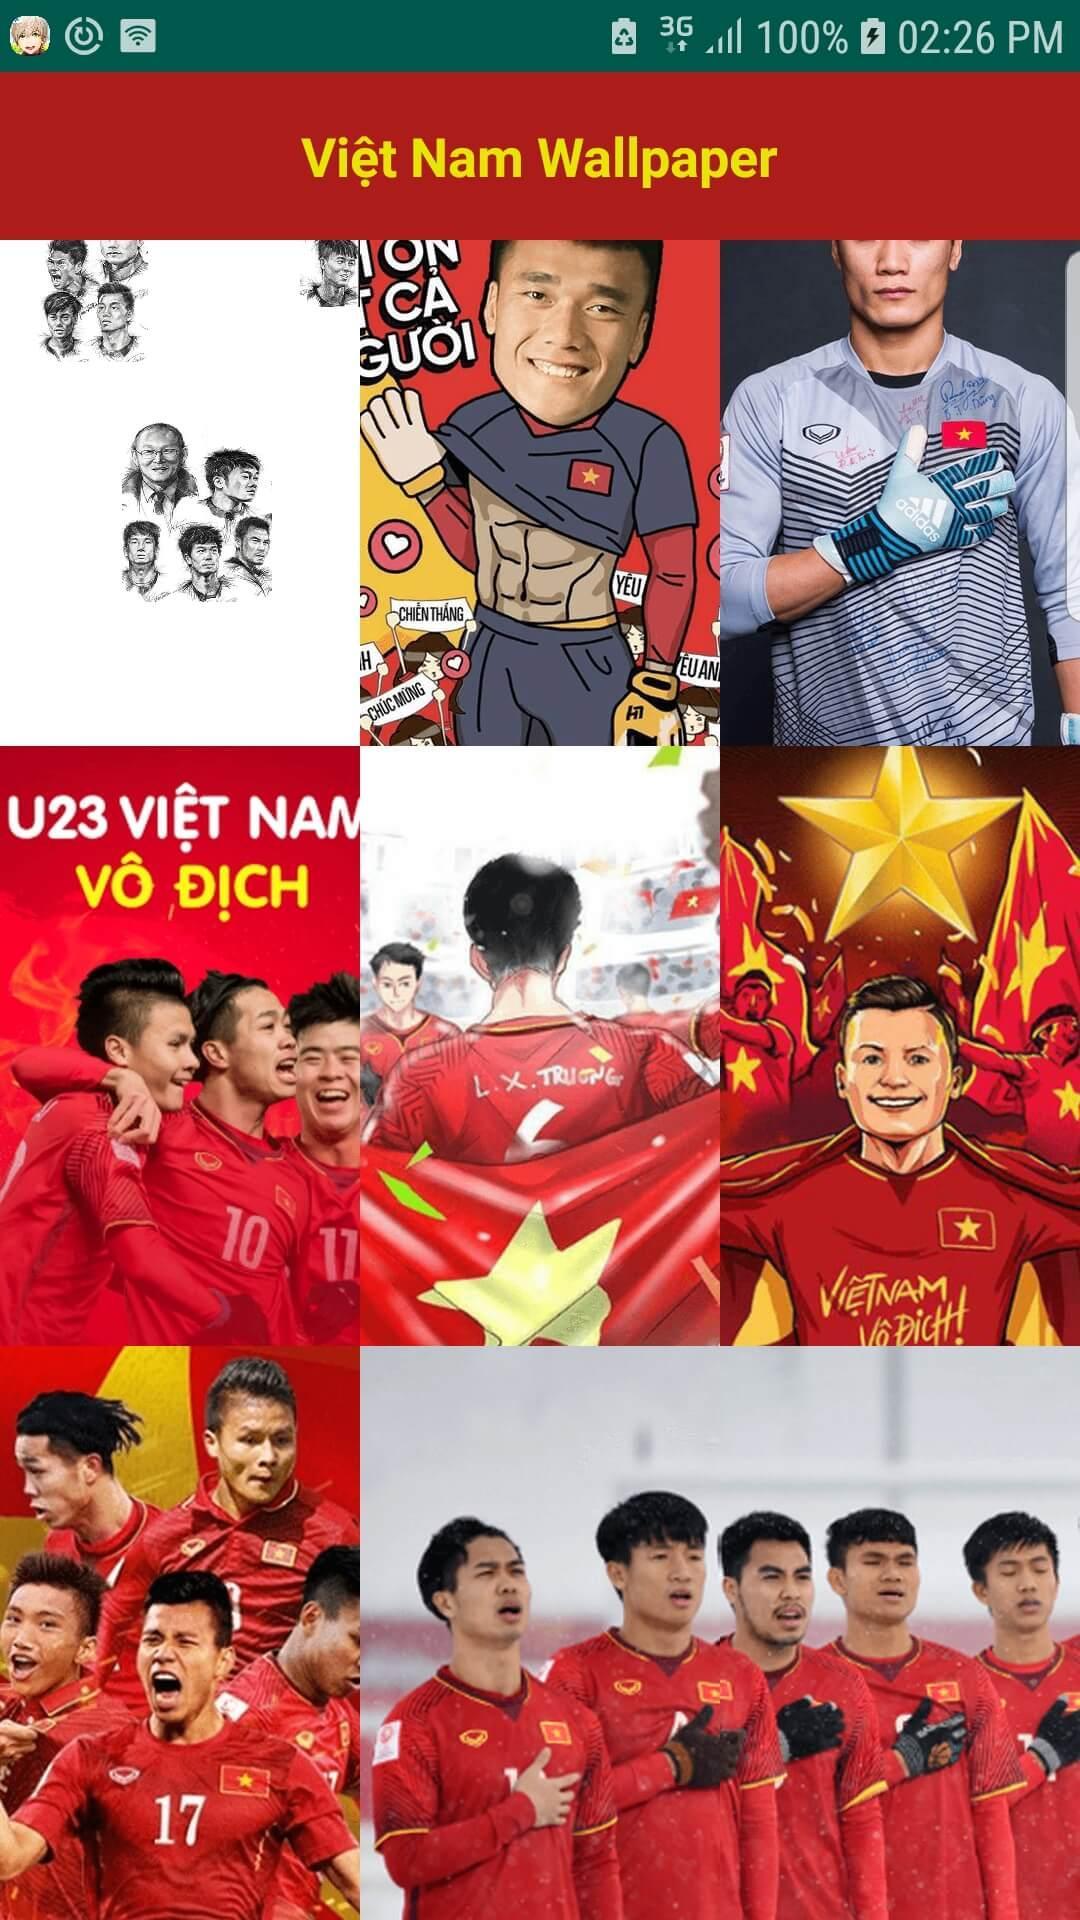 APK về Việt Nam vô địch là ứng dụng yêu thích của người hâm mộ bóng đá. Cùng với đó là những hình nền bóng đá đẹp mắt và chất lượng cao để trang trí cho điện thoại của bạn. Hãy tải về ngay hôm nay để đón chào chiến thắng lịch sử của đội tuyển Việt Nam.